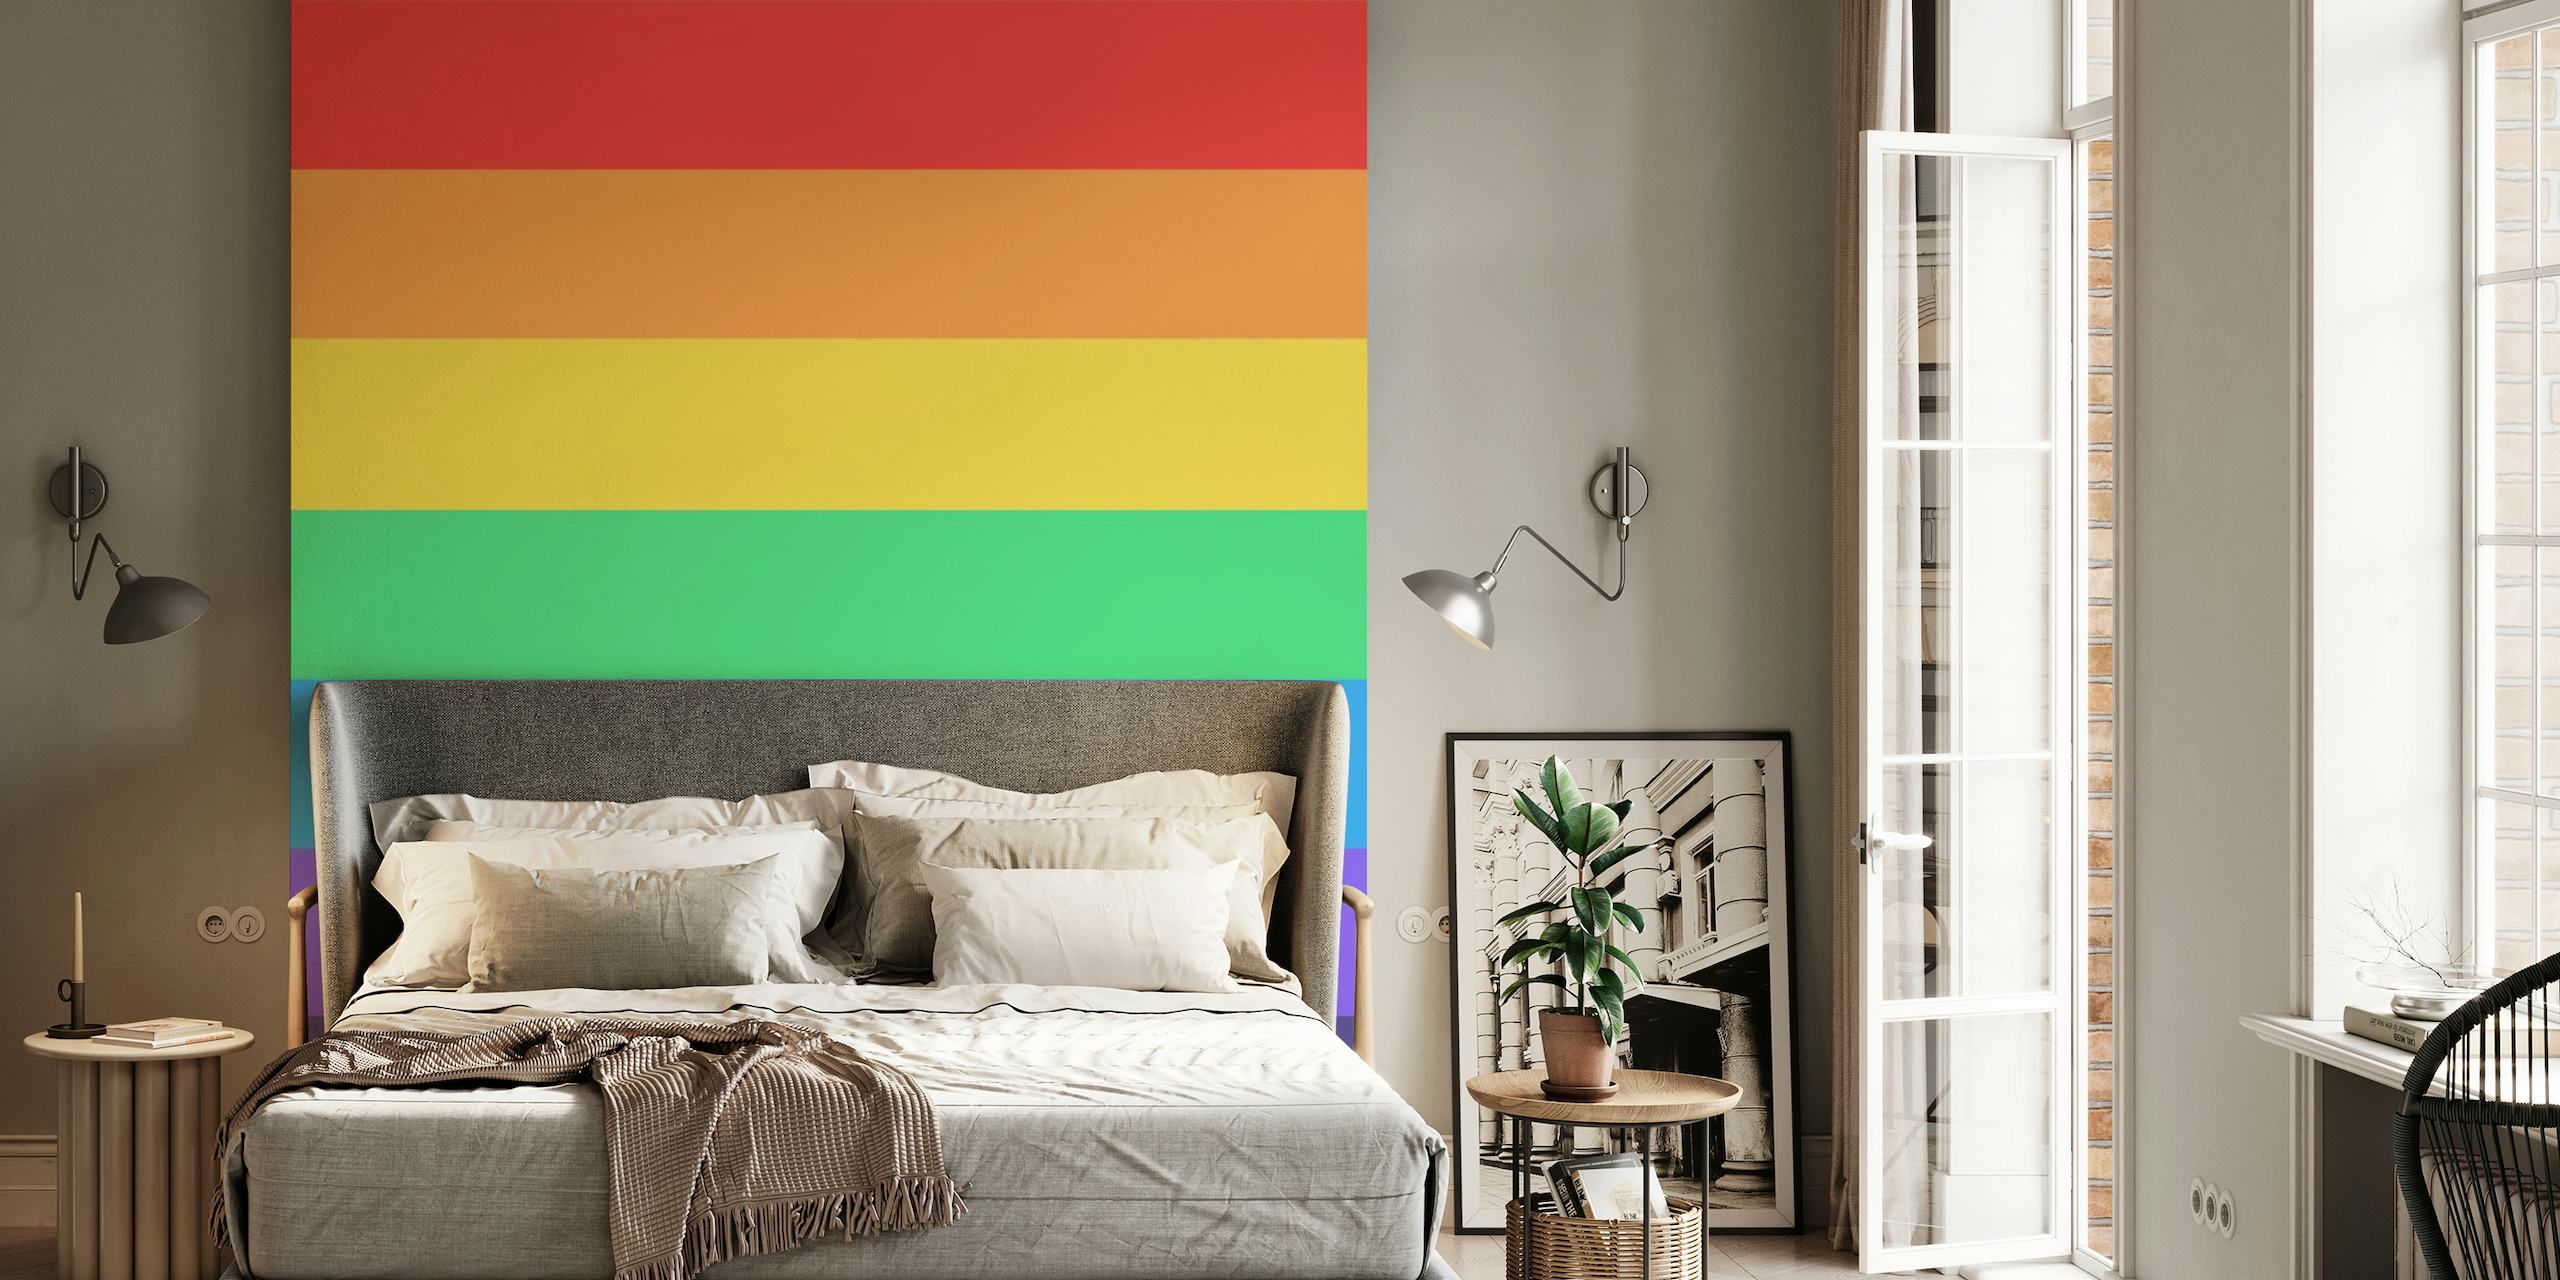 Fototapete mit horizontalen Streifen in Regenbogenfarben